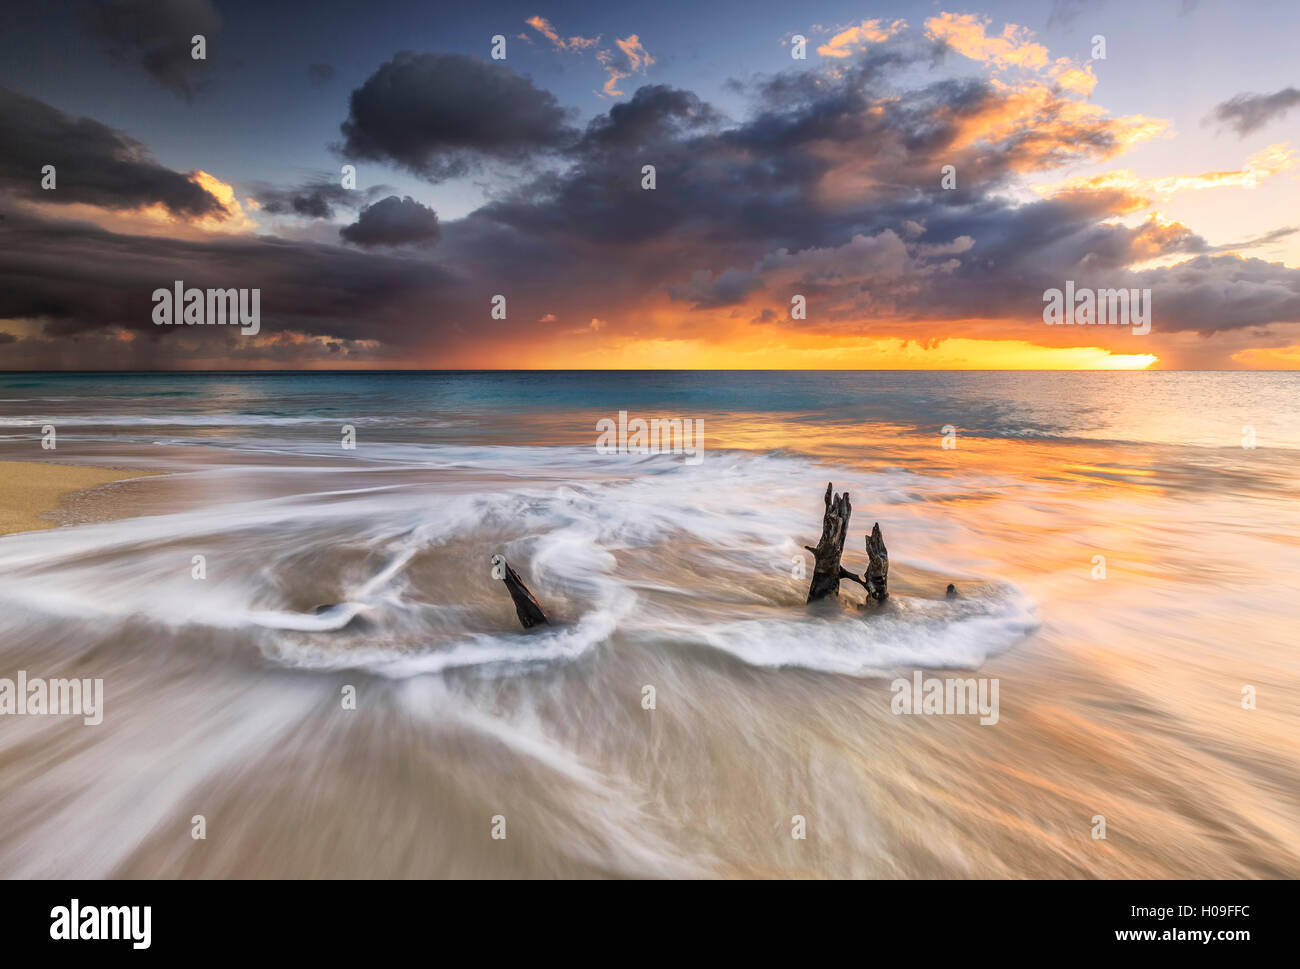 Les vagues et le coucher du soleil des caraïbes sur des troncs d'images Ffryes Beach, Antigua, Antigua et Barbuda, Iles sous le vent, West Indies Banque D'Images